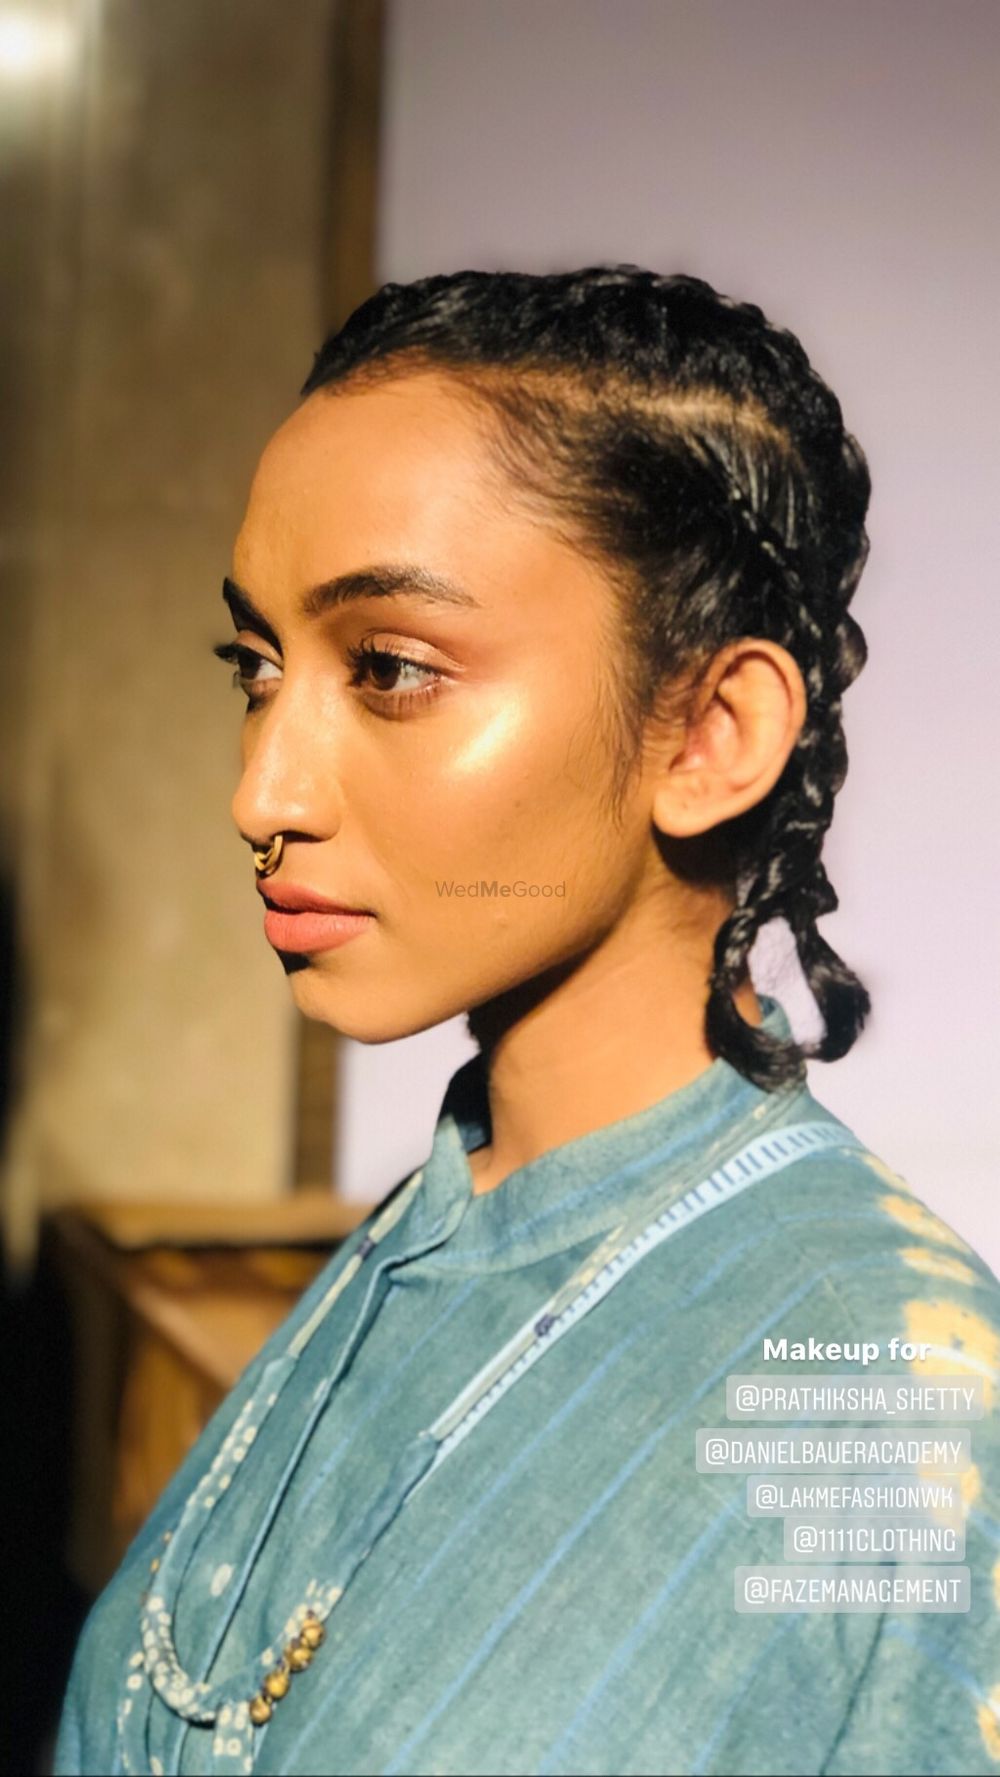 Photo From Lakme Fashion Week - By Ankita Manwani Makeup and Hair